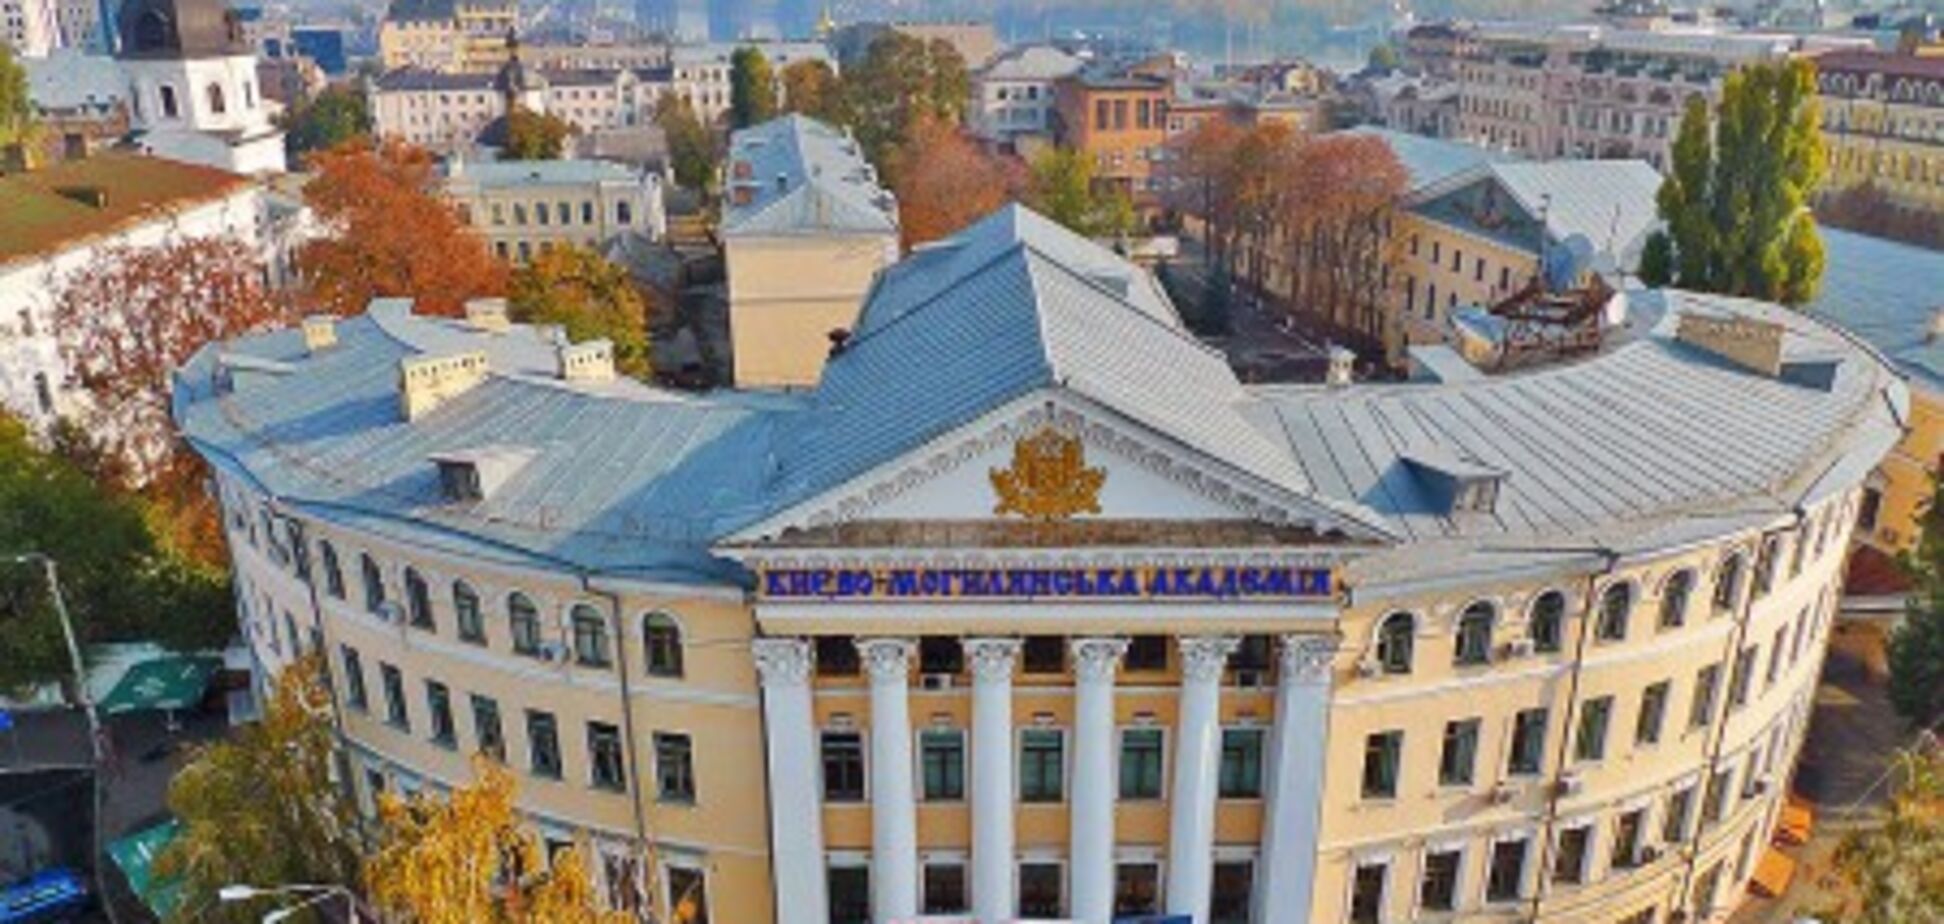 Не меньше 150 лет: в Киево-Могилянской академии обнаружили уникальную находку